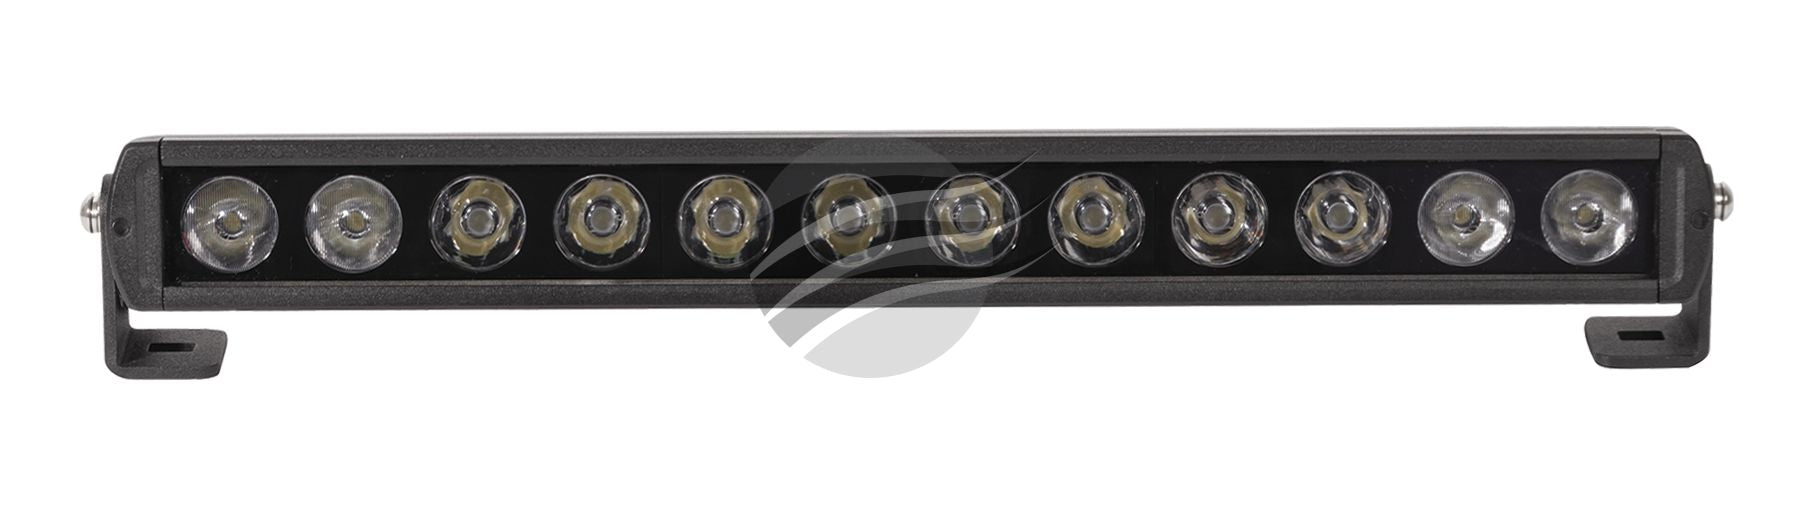 12 LED DRIVING LAMP LIGHTBAR COMBO BEAM 30/15Deg 9-36V 120W - Hybrid Street & 4x4